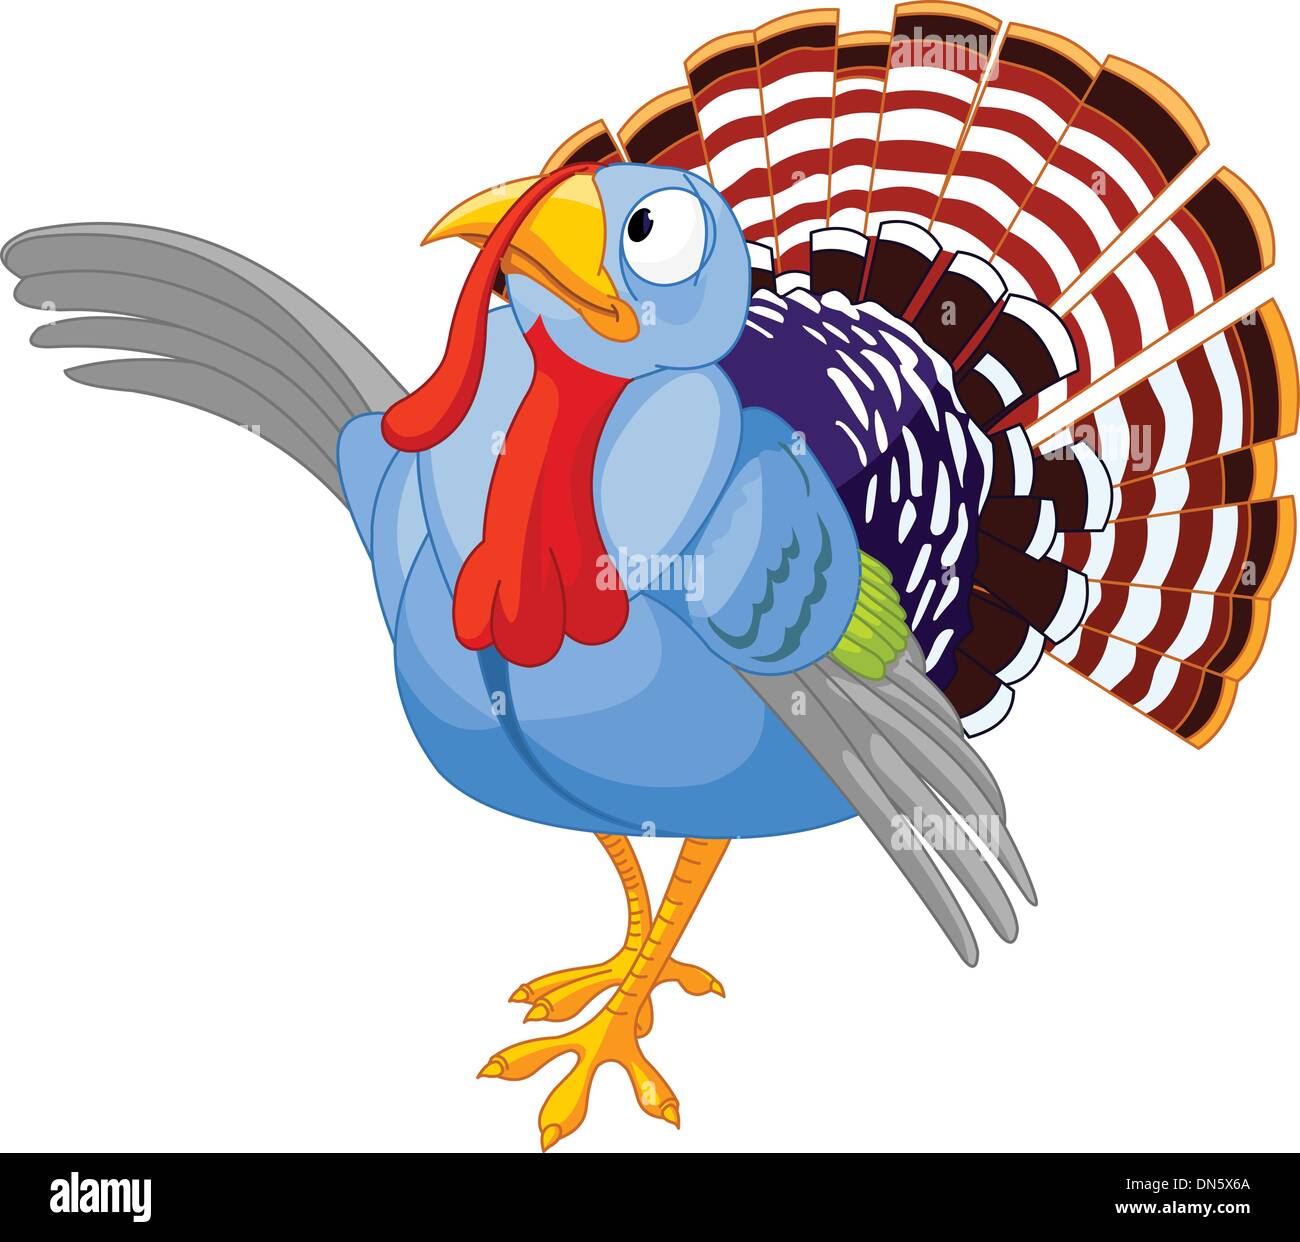 Thanksgiving Cartoon Turkey presenting Stock Vector